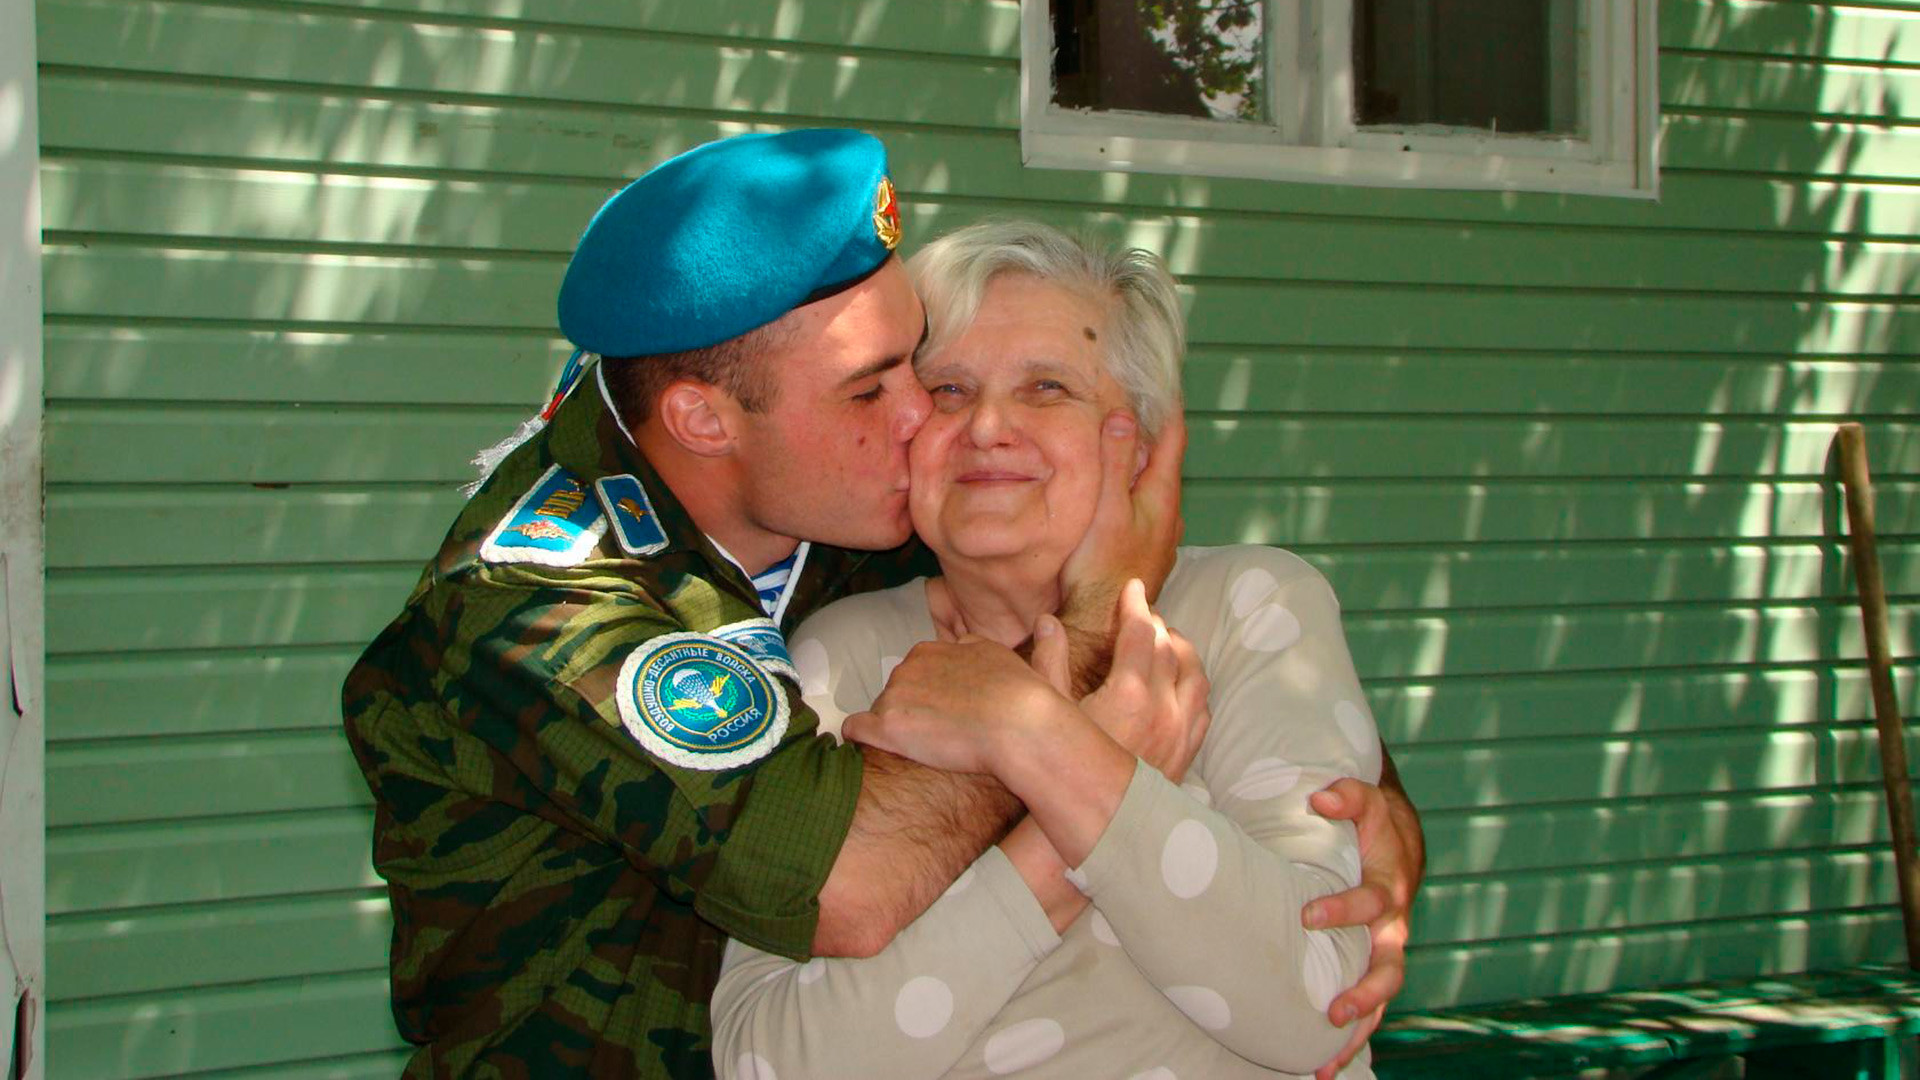 Filho adotivo enche Tatiana de beijos antes de partir para servir ao exército, em maio de 2018.